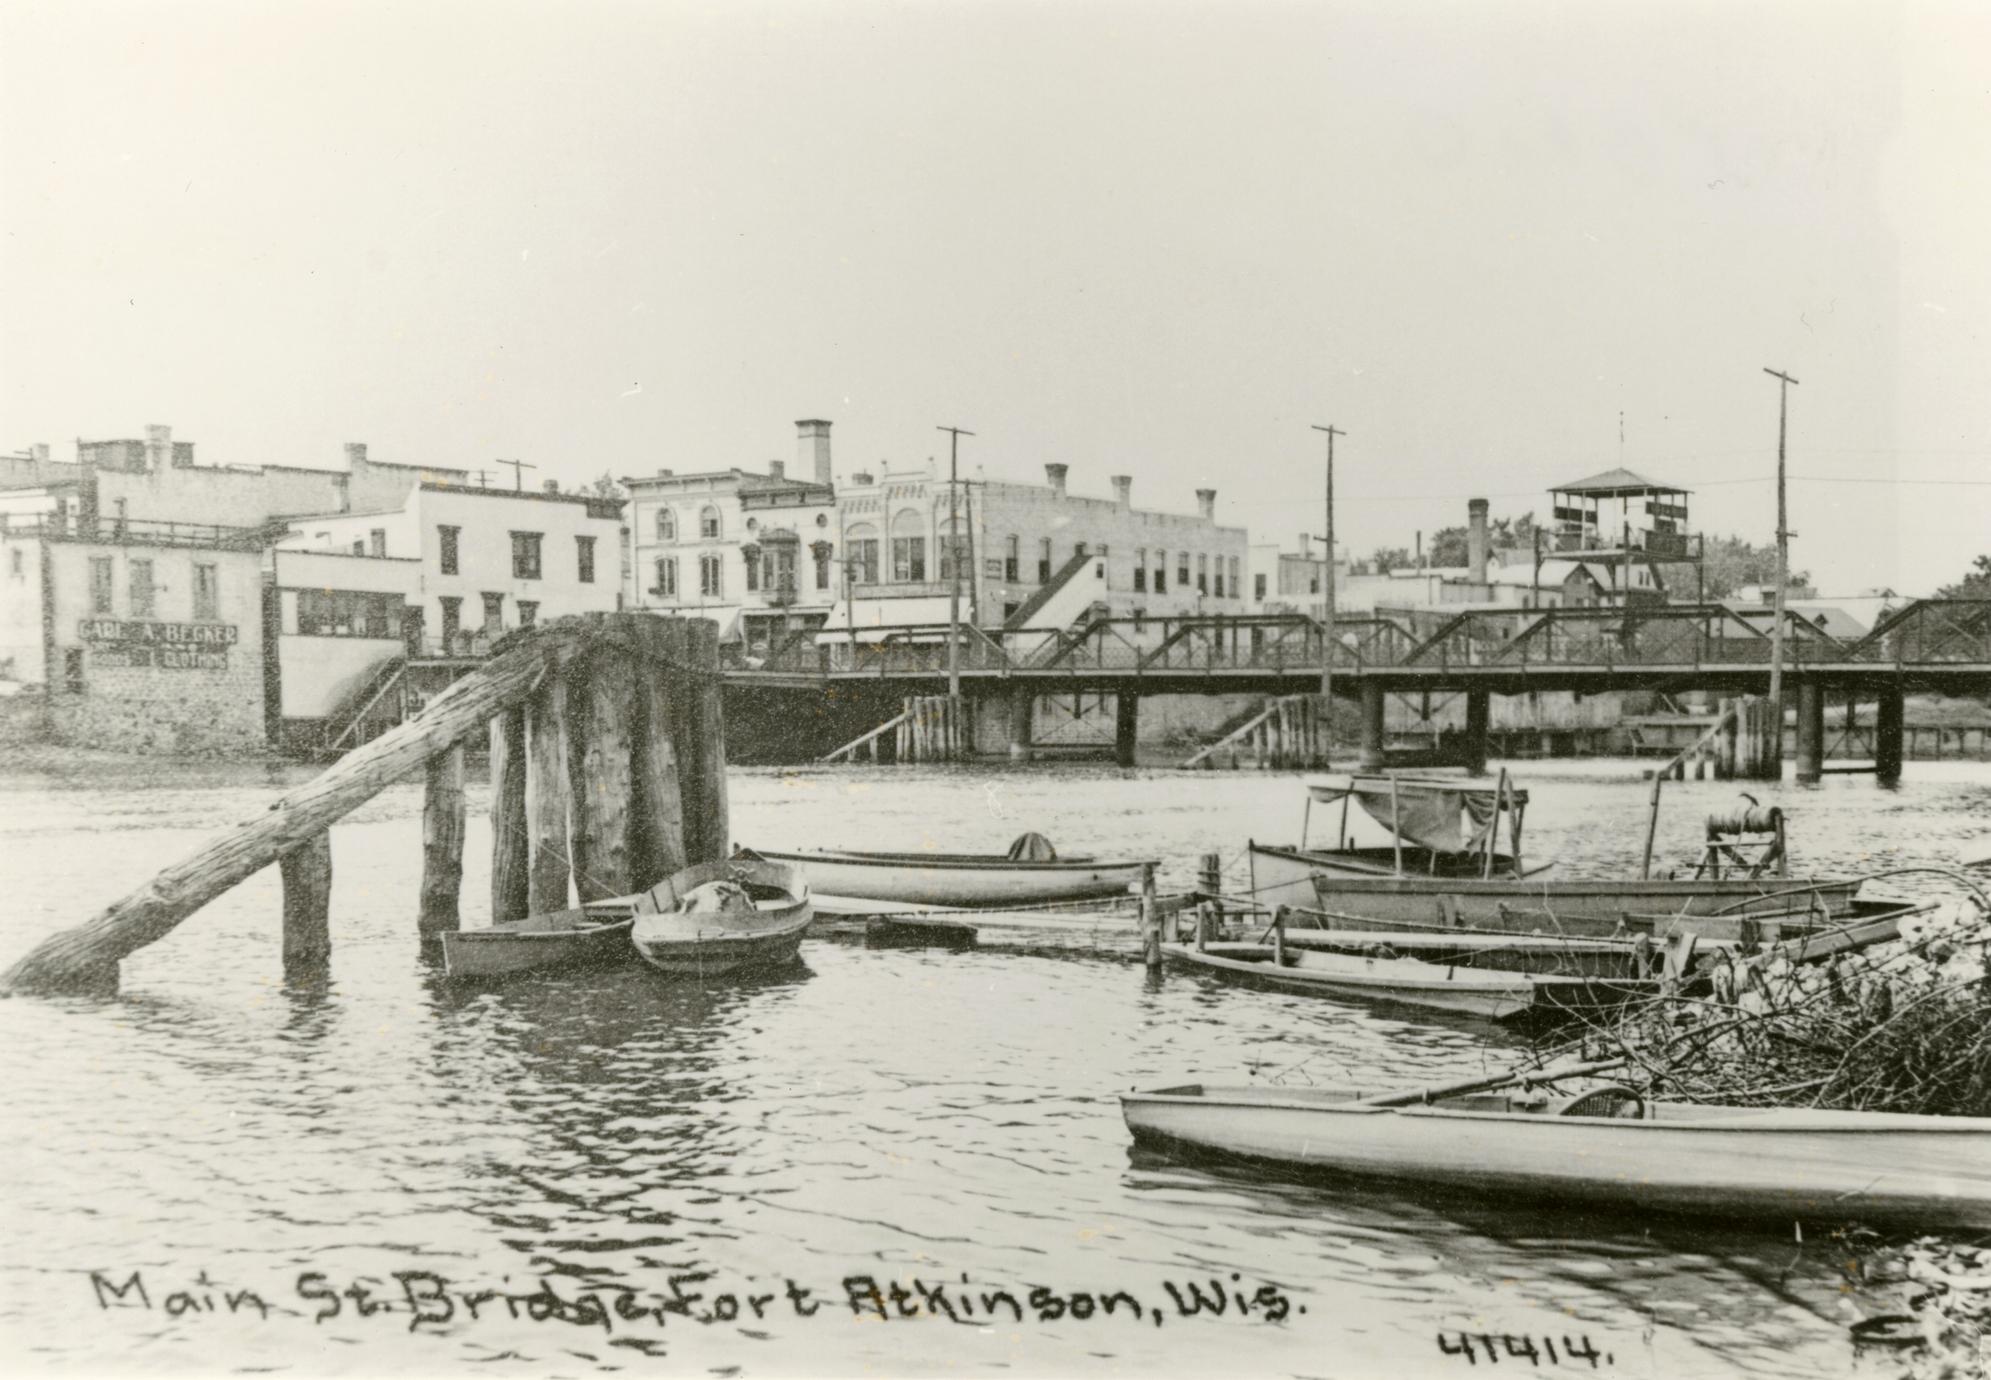 Boats at Main Street bridge